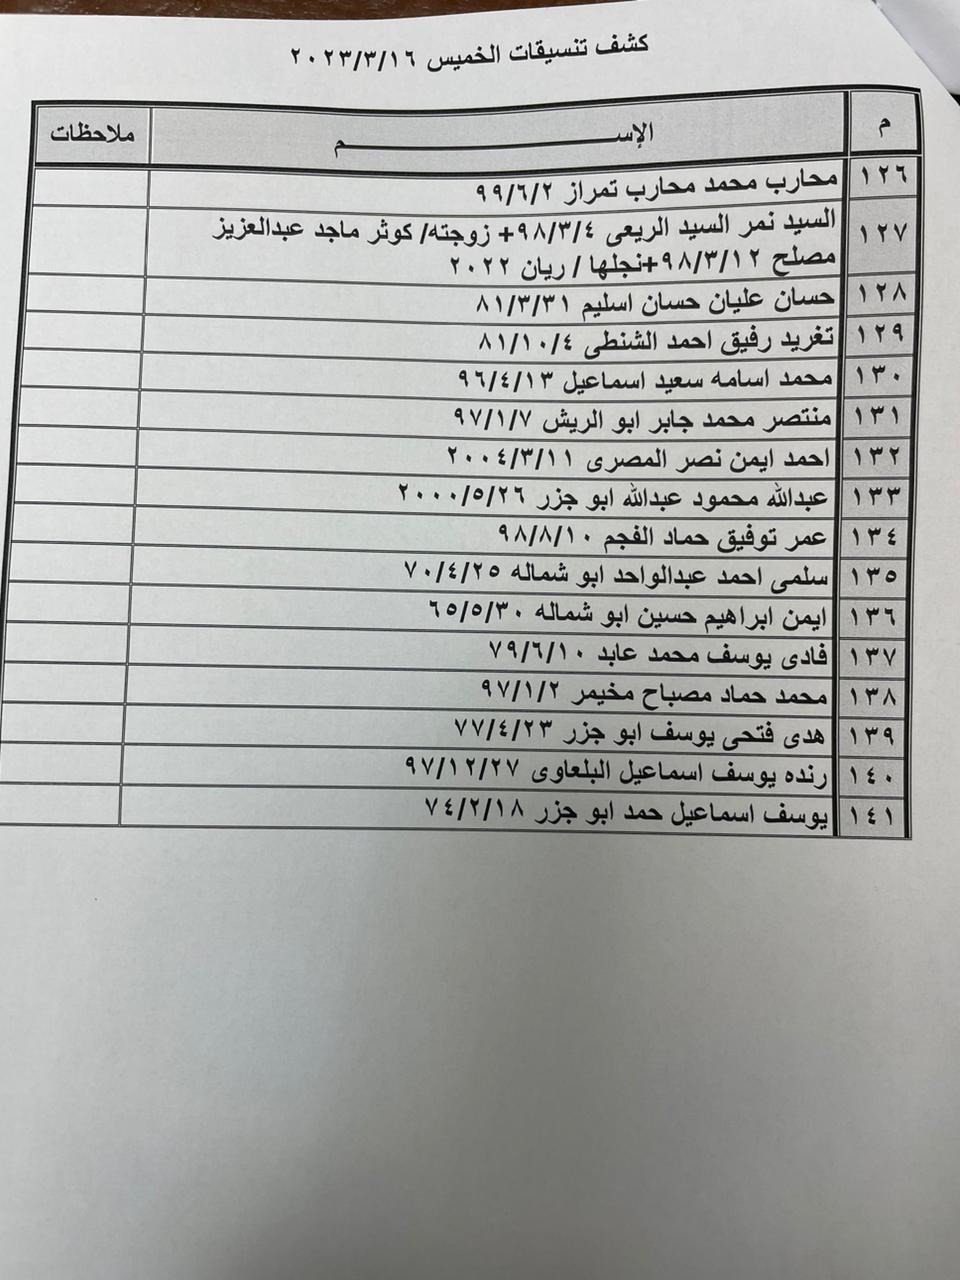 بالأسماء: داخلية غزة تنشر "كشف التنسيقات المصرية" للسفر الخميس 16 مارس 2023